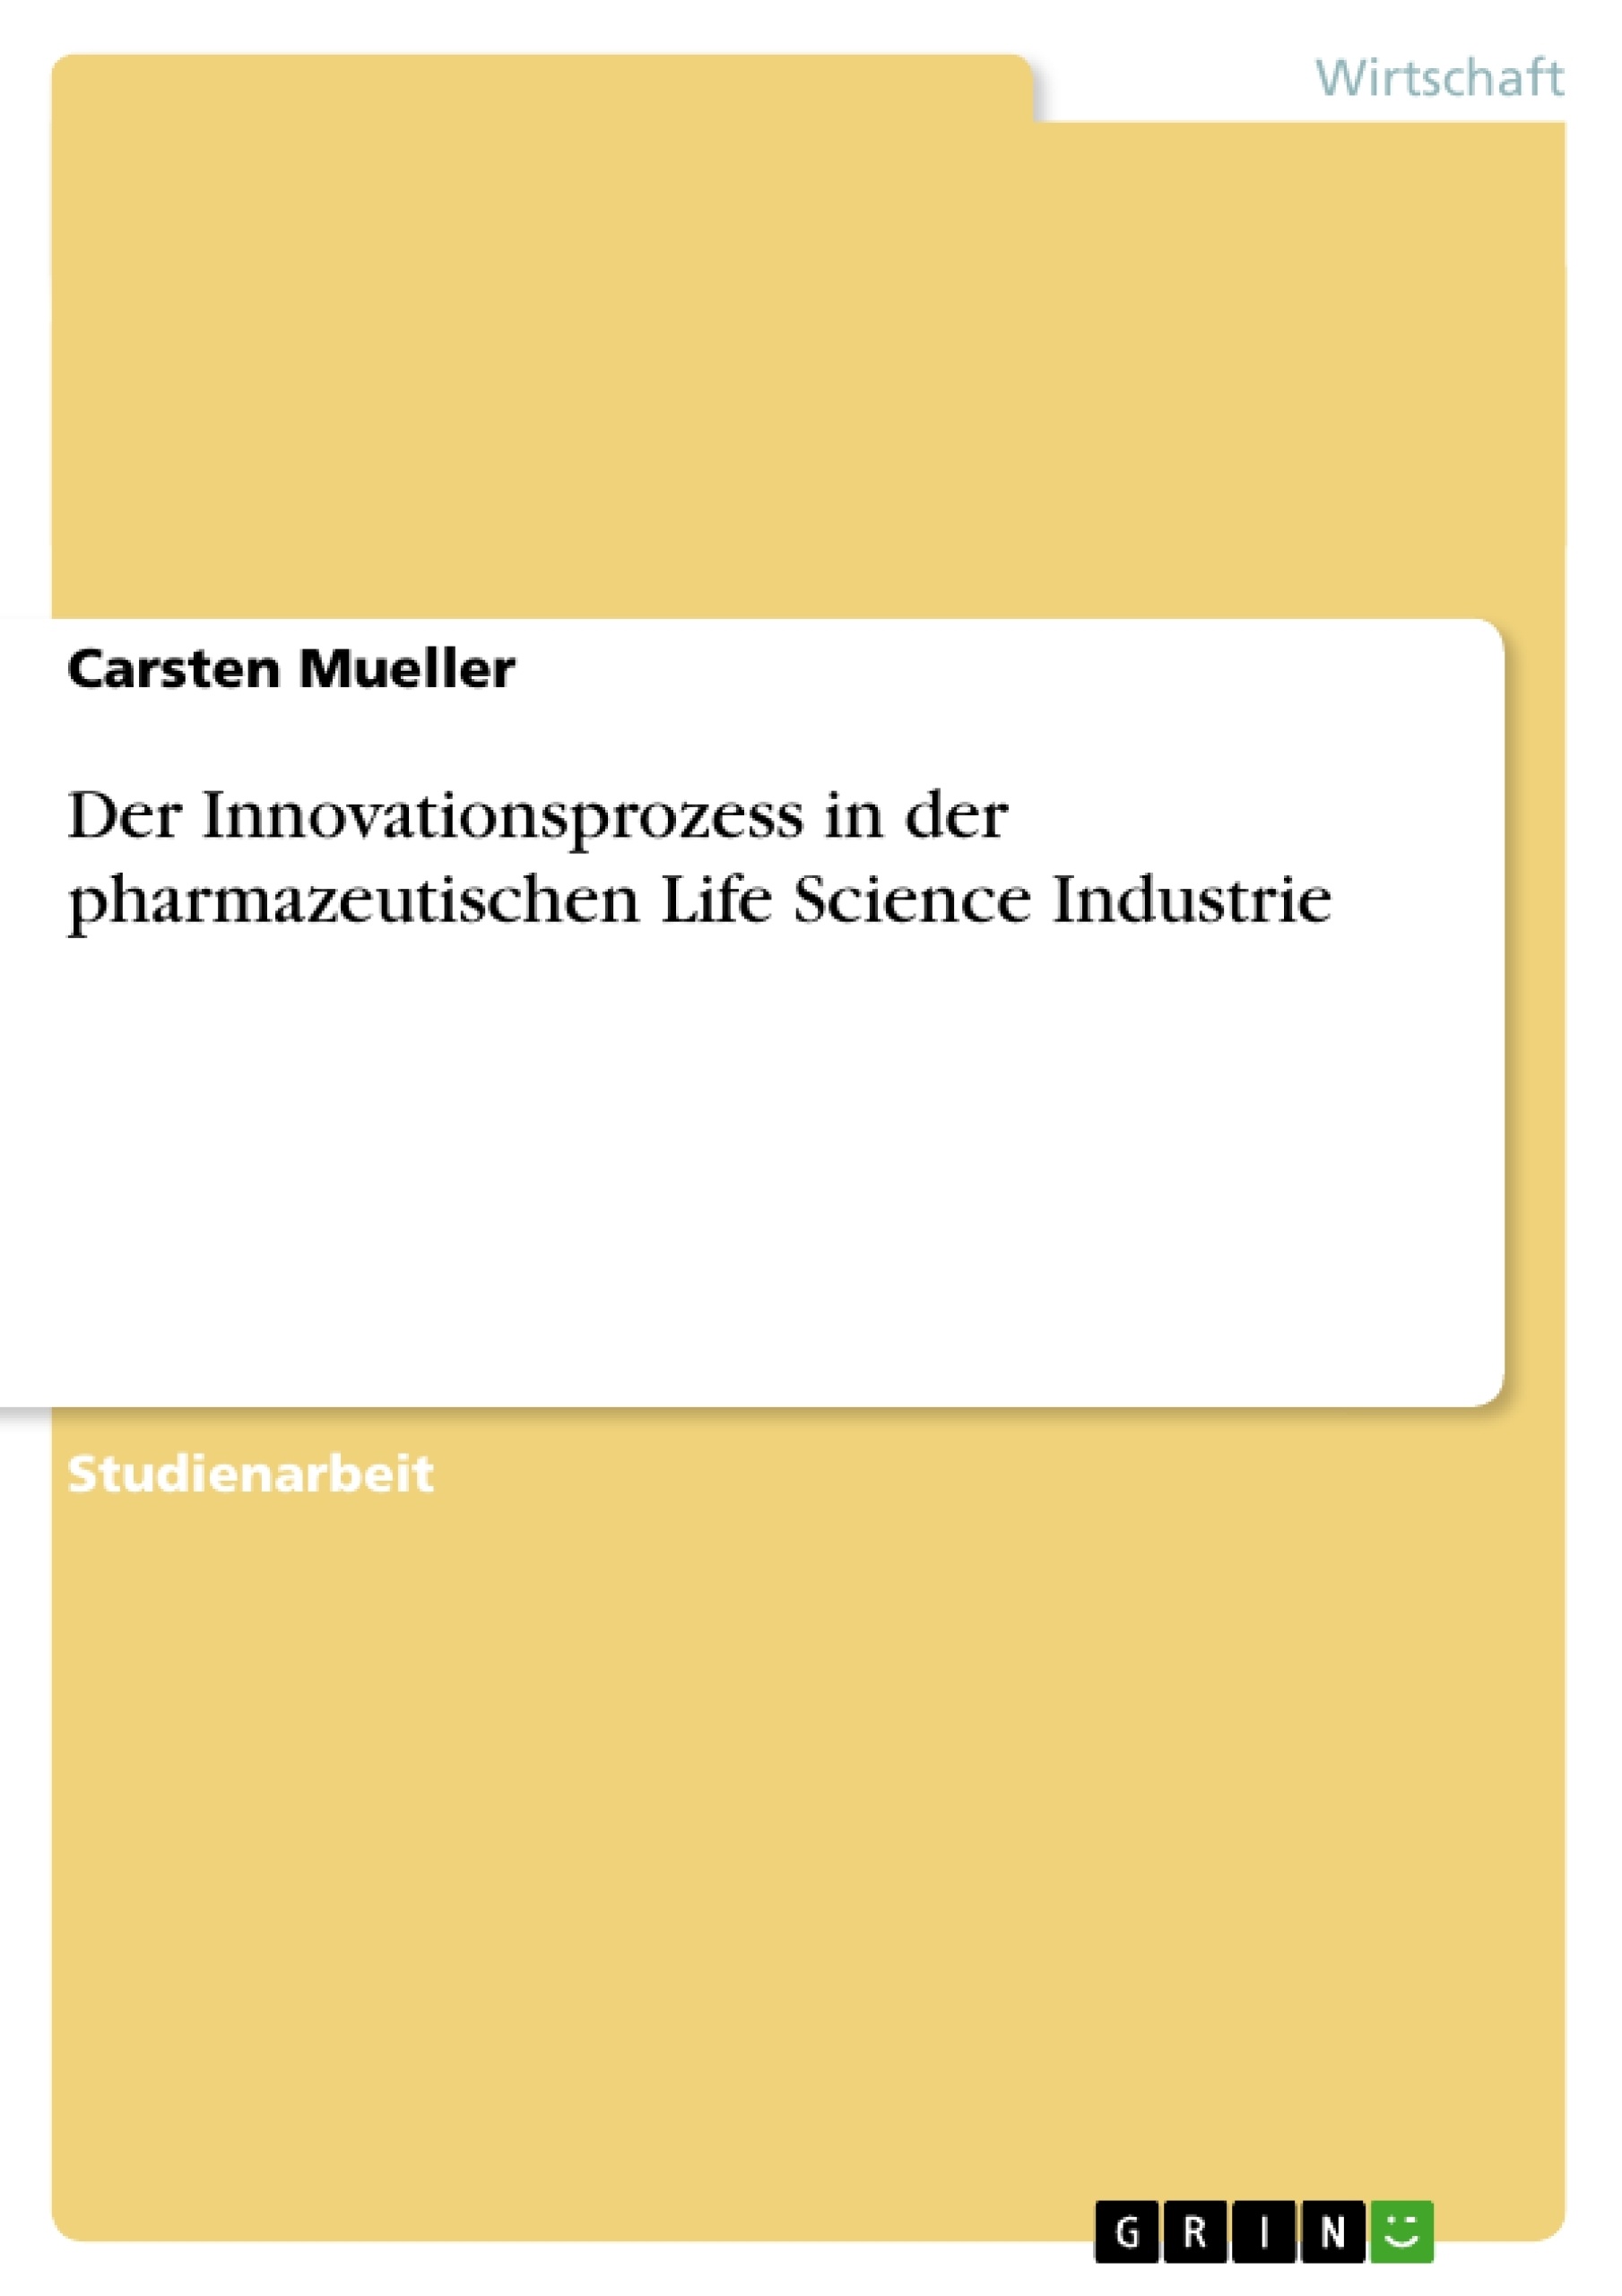 Title: Der Innovationsprozess in der pharmazeutischen Life Science Industrie